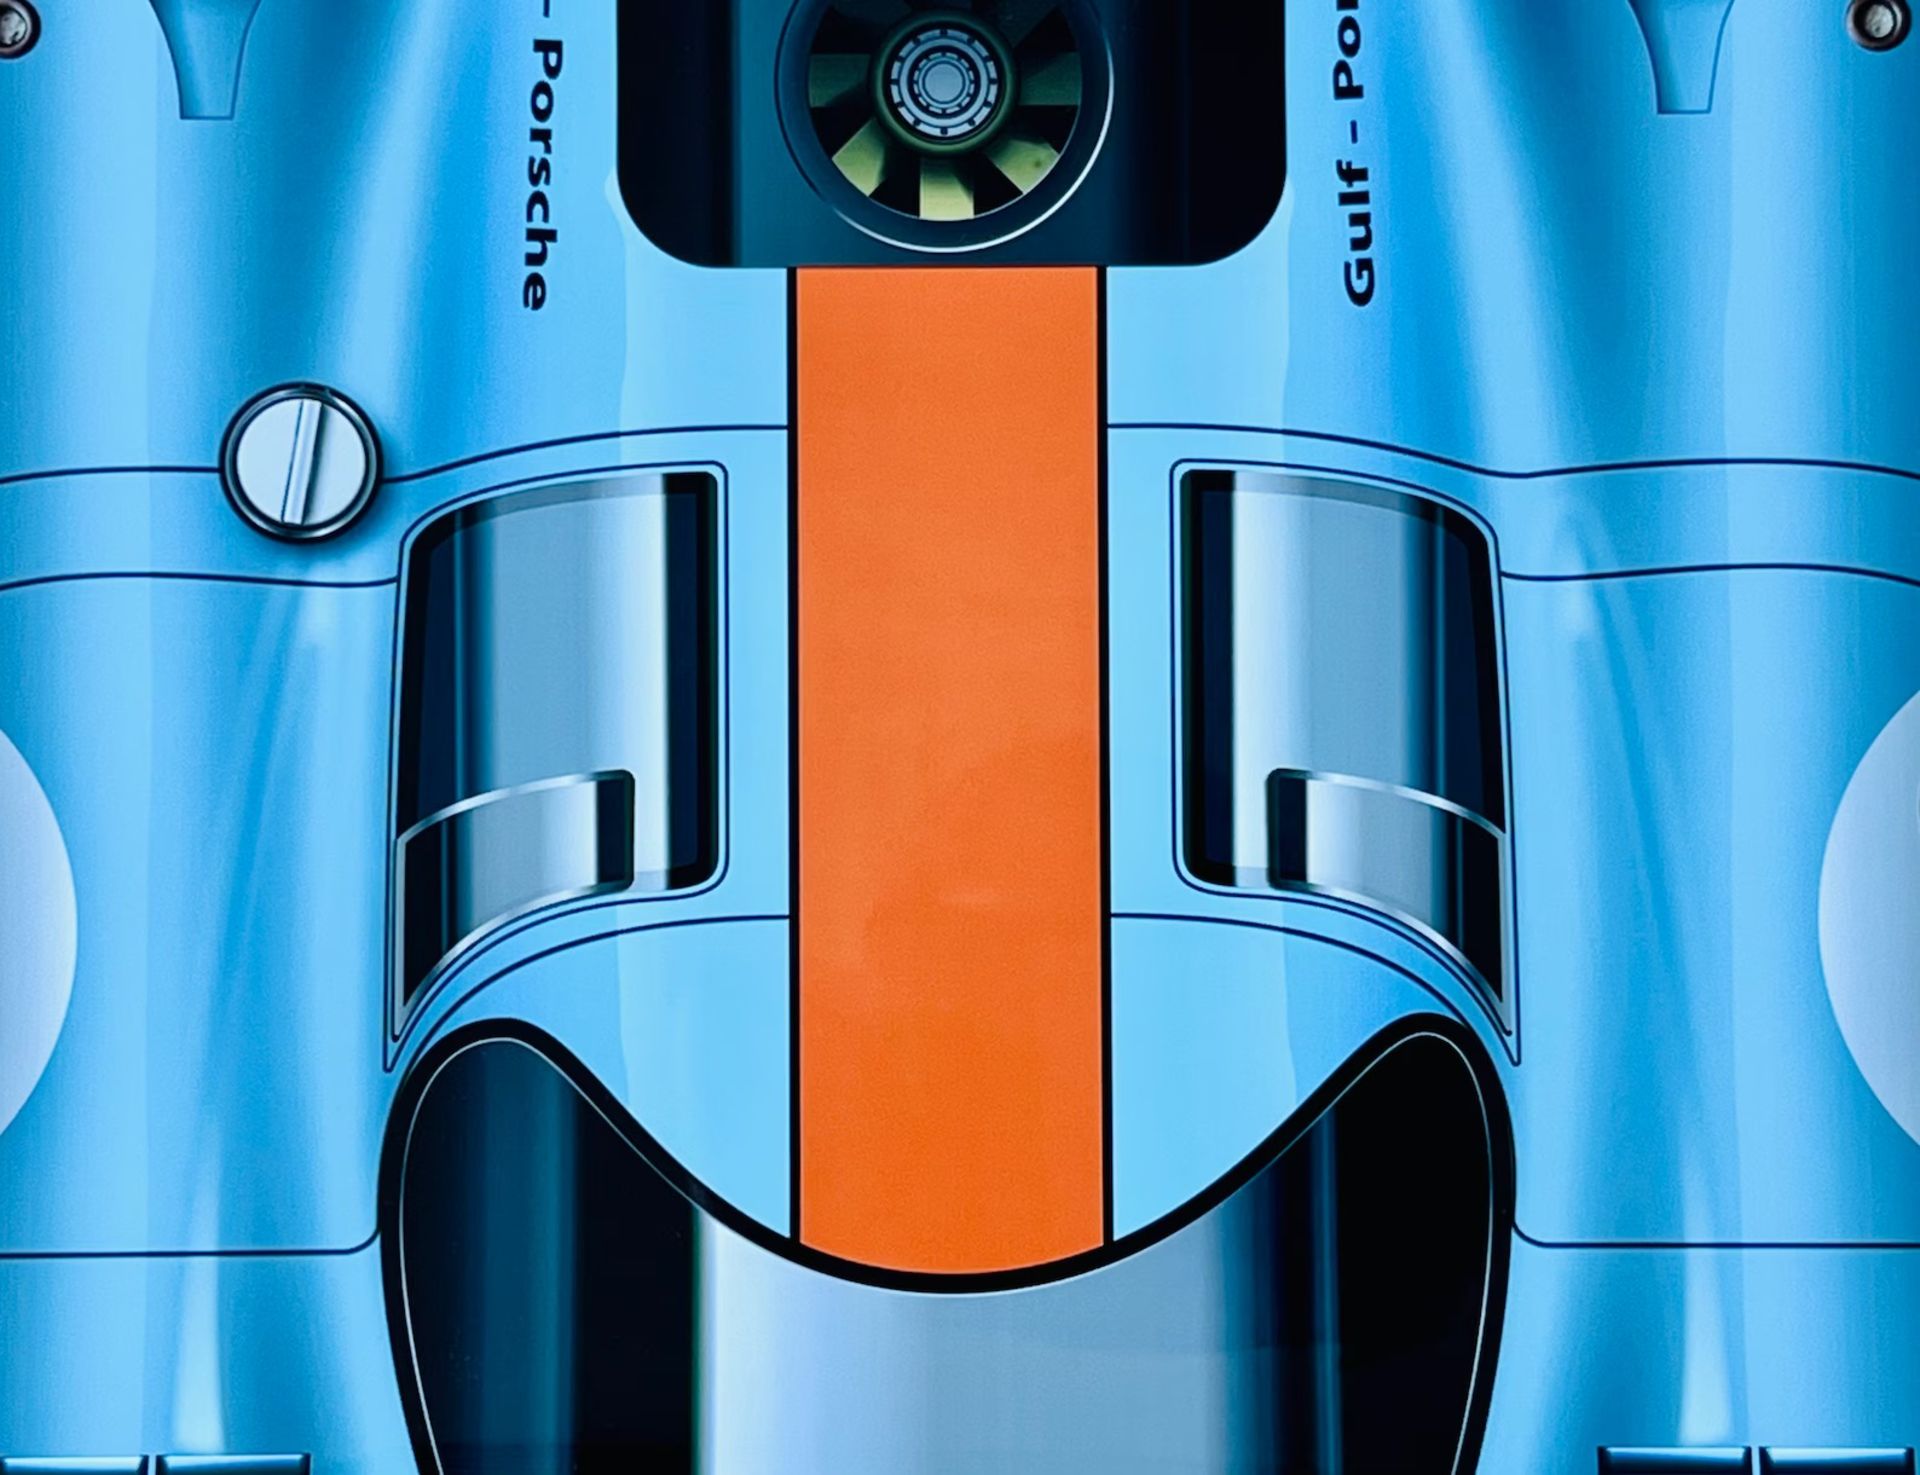 Steve McQueen, Porsche 917K, Le Mans Garage Display - Bild 4 aus 4